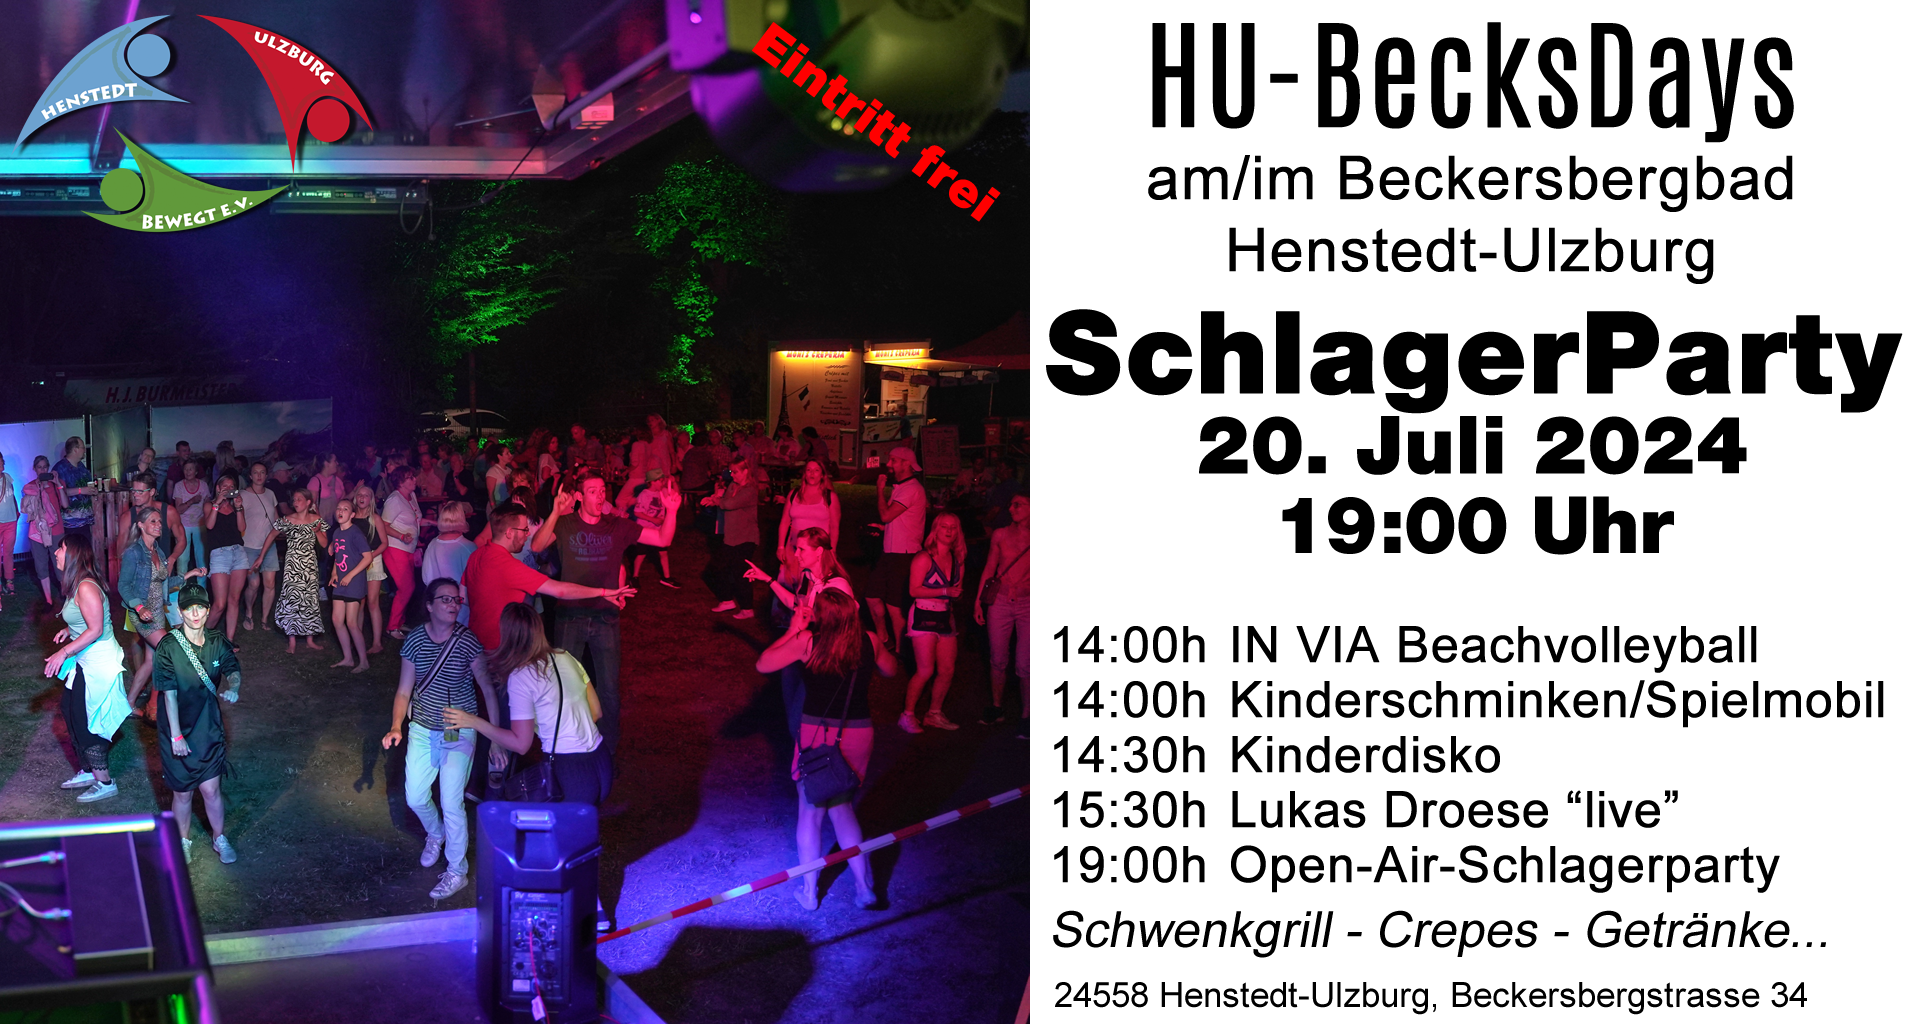 HU-BecksDays - Open-AirSchlagerParty von 19-23 Uhr am 20.07.2024